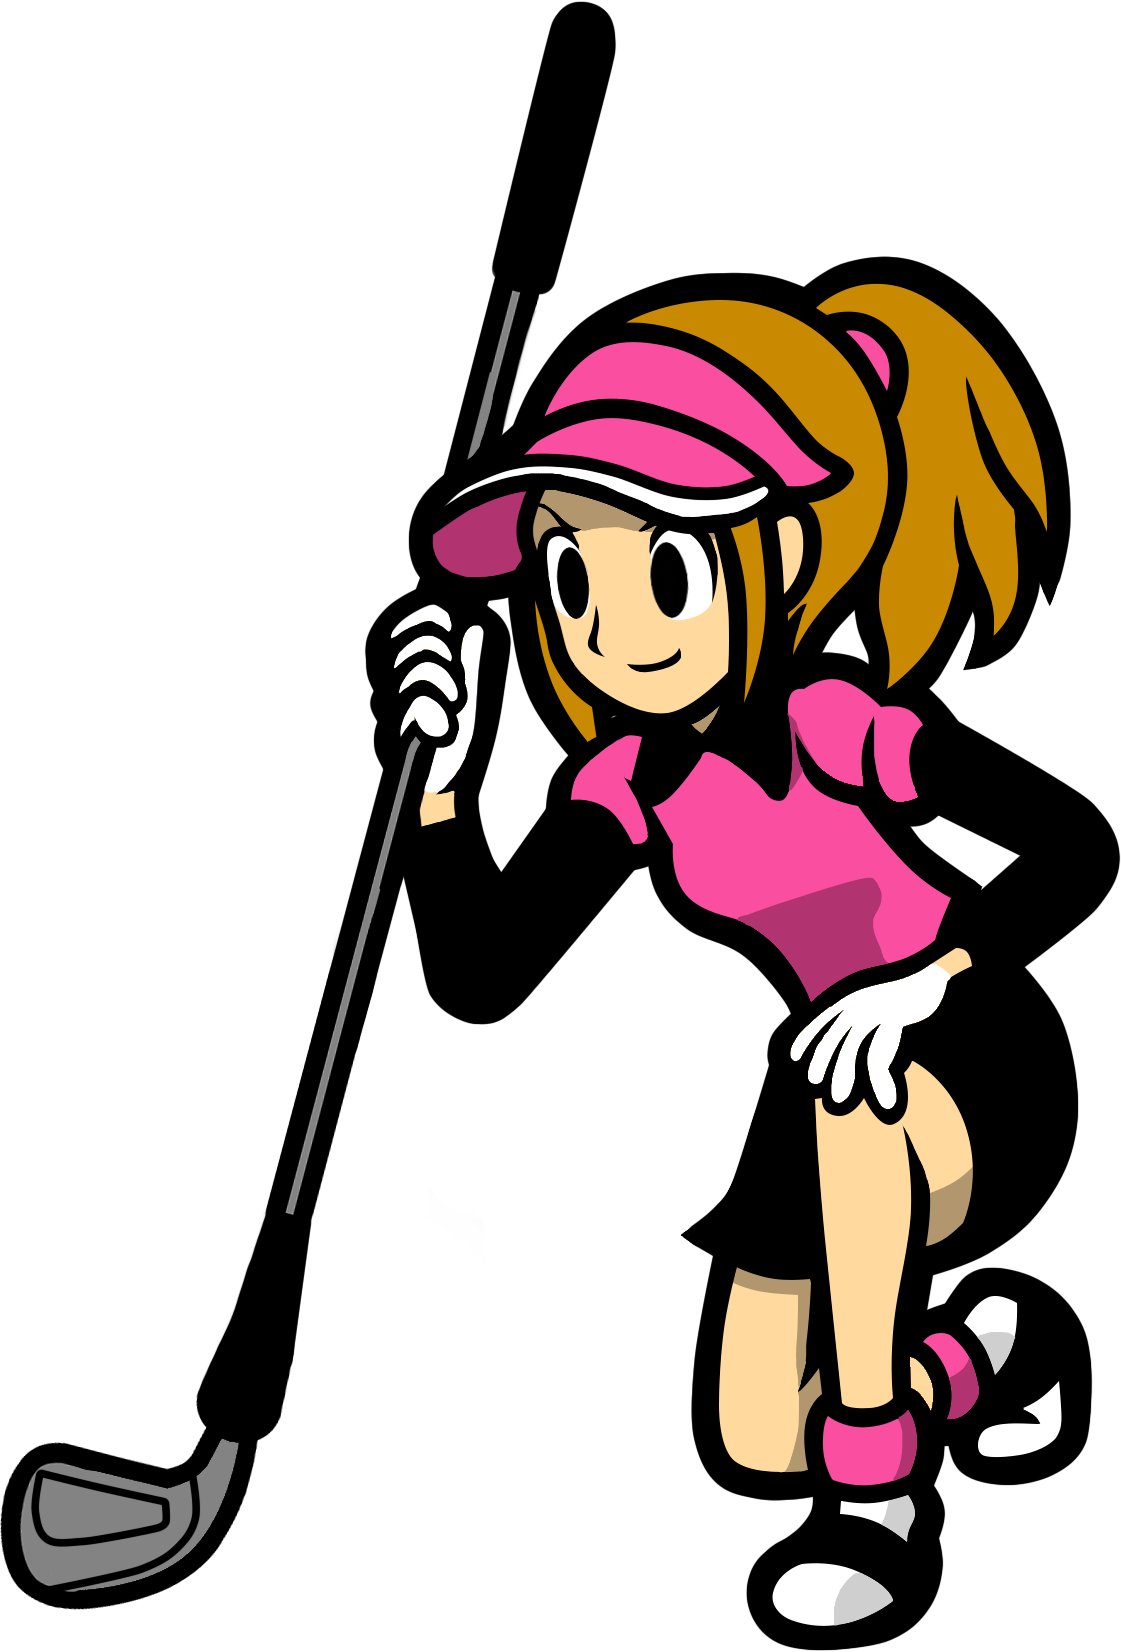 Golf clipart female golfer. Image wii png rhythm